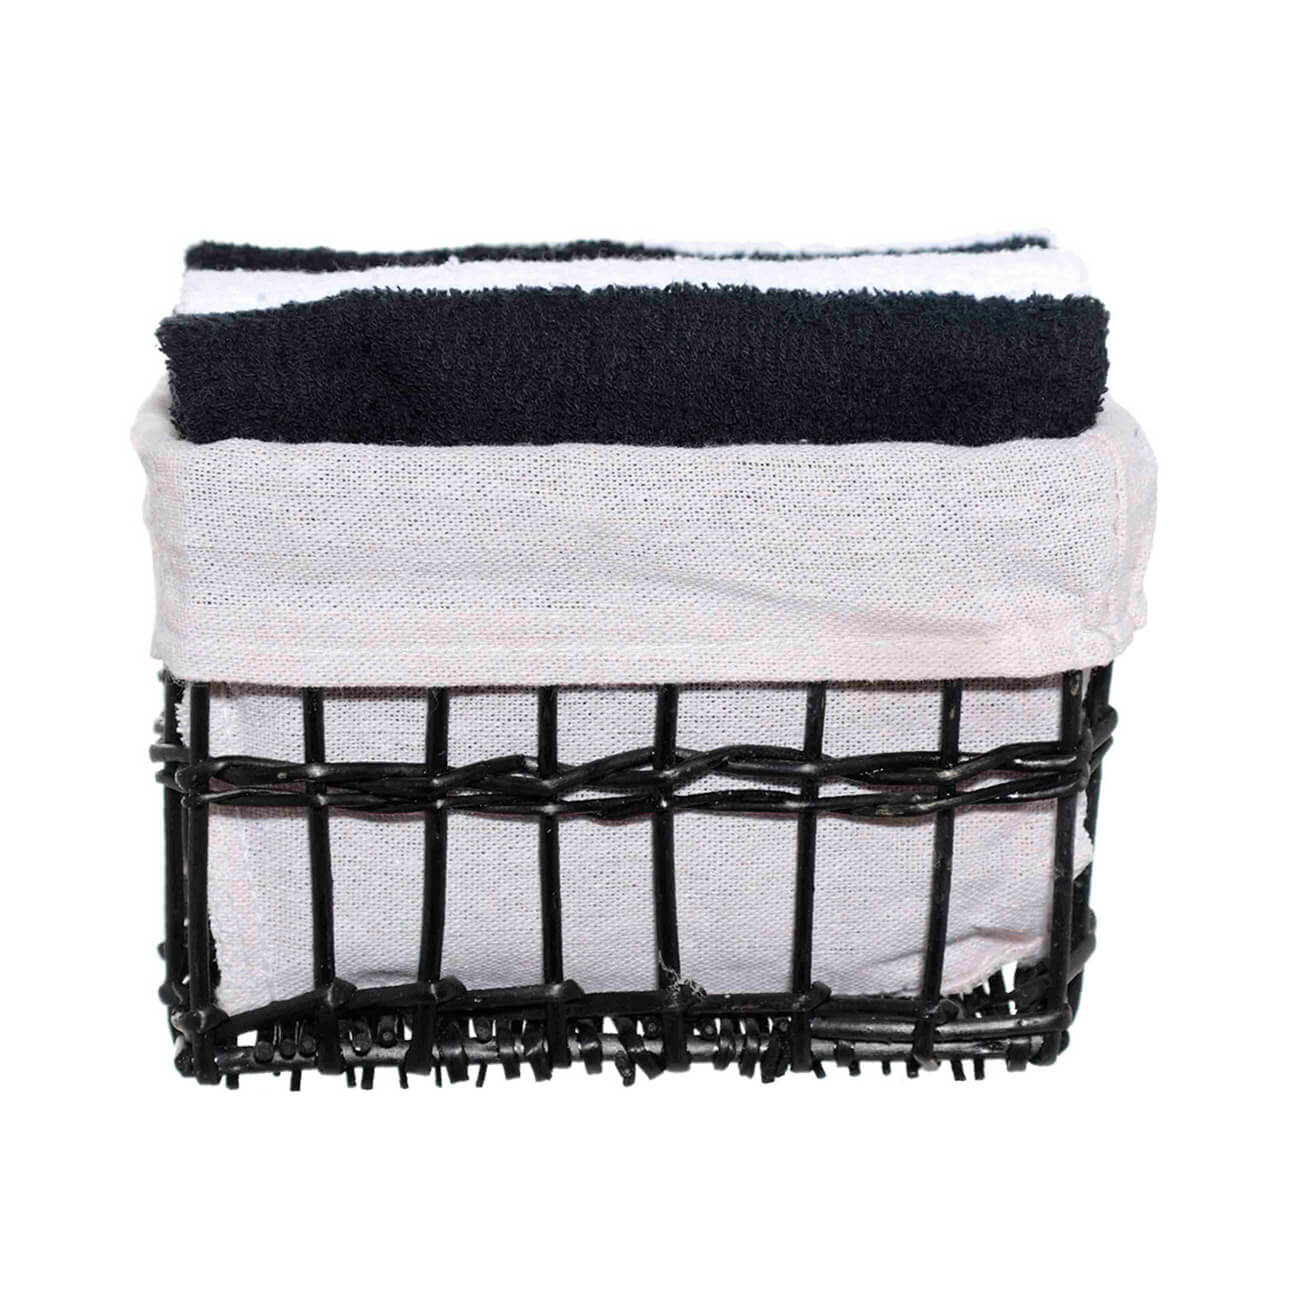 Полотенце, 30х30 см, 4 шт, в корзине, хлопок/лоза, черное/белое, Basket towel изображение № 1